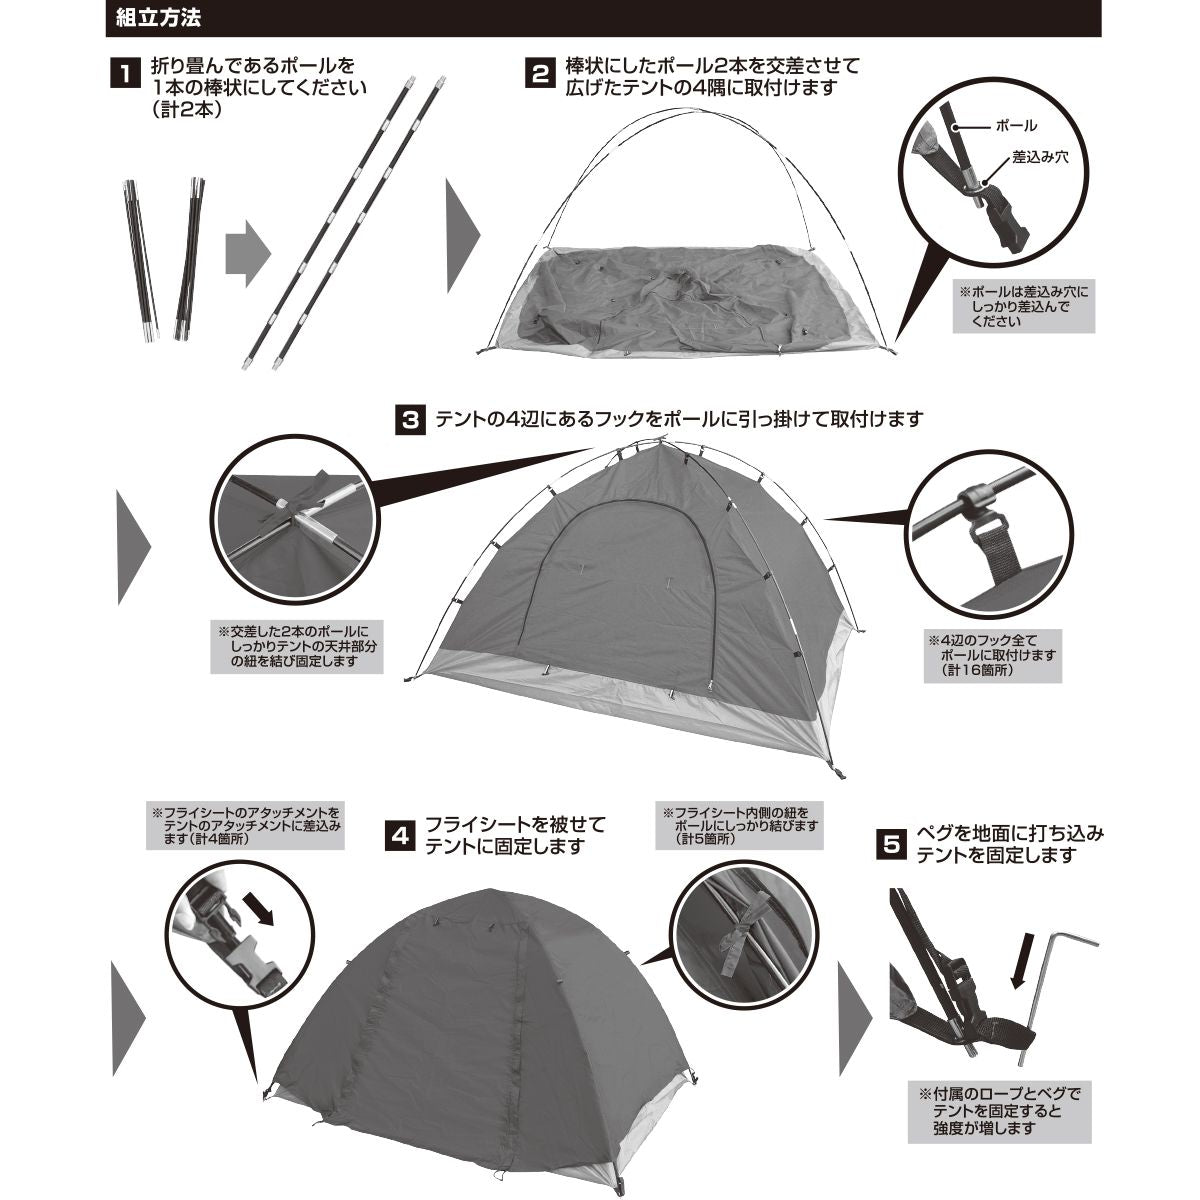 OUTLET】テント ドーム型 組立て式マルチドームテント 2人用 HAC3557